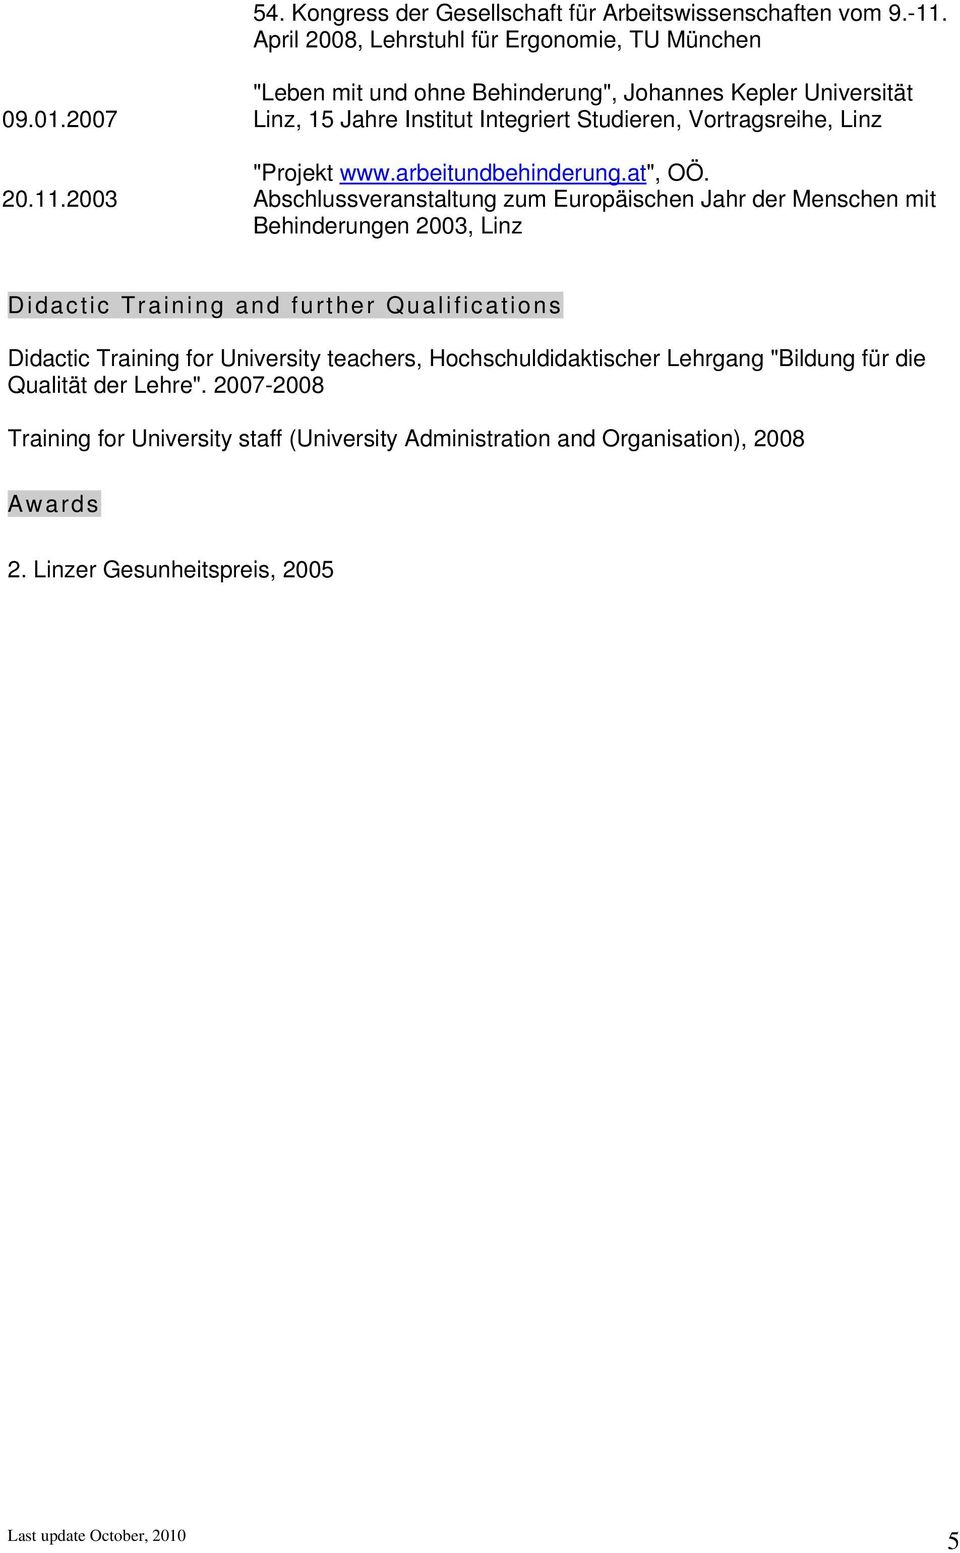 2003 "Leben mit und ohne Behinderung", Johannes Kepler Universität Linz, 15 Jahre Institut Integriert Studieren, Vortragsreihe, Linz "Projekt www.arbeitundbehinderung.